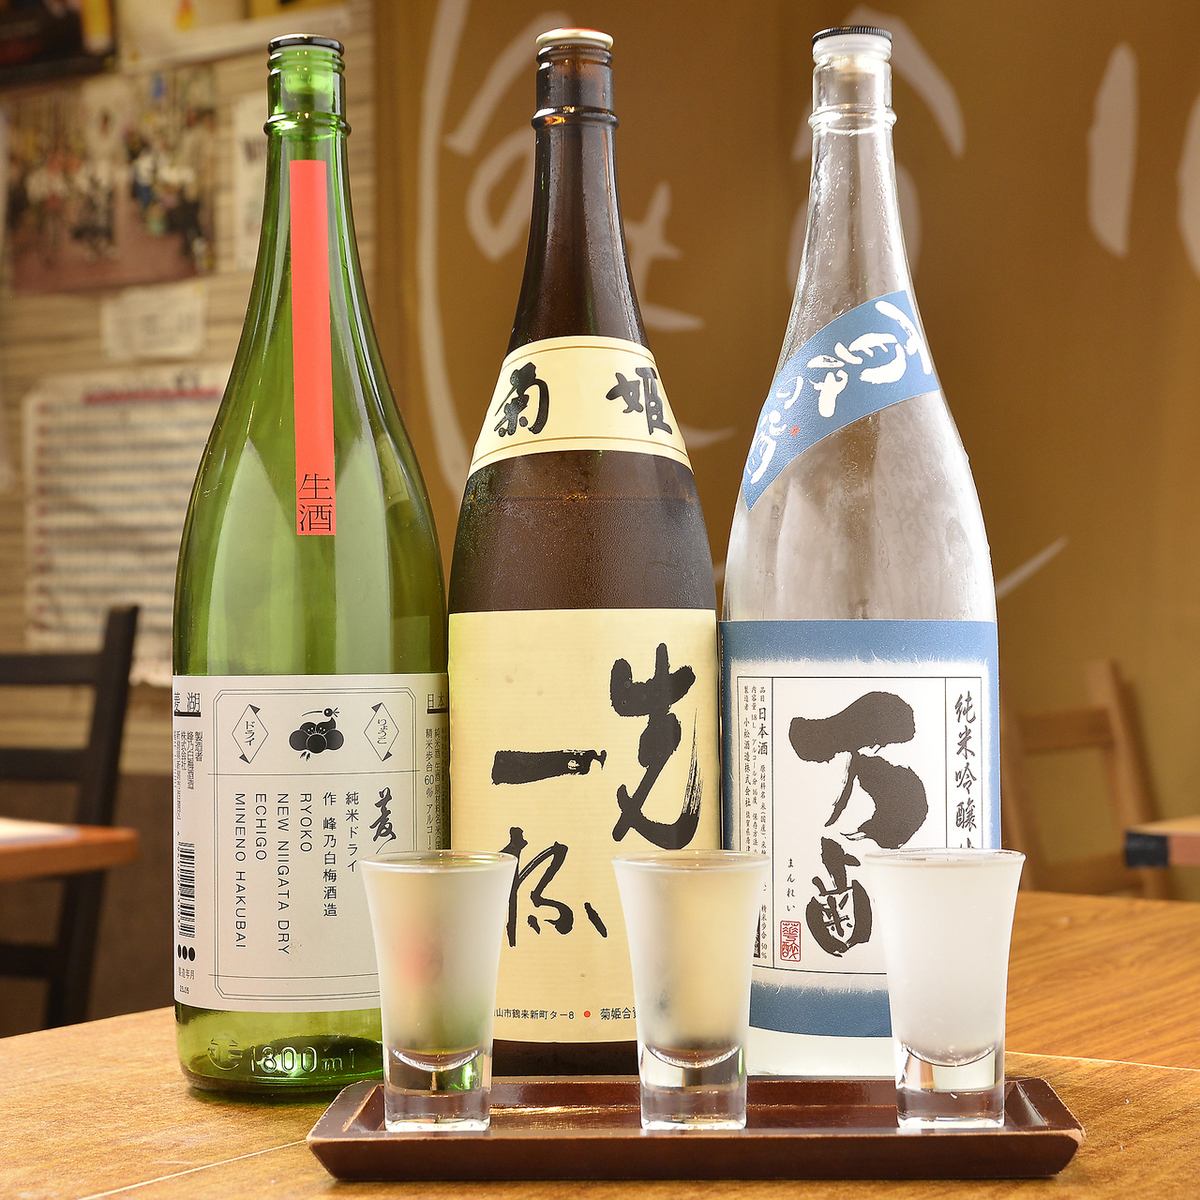 カウンター席×日本酒でしっぽりと。お一人でも入りやすい雰囲気